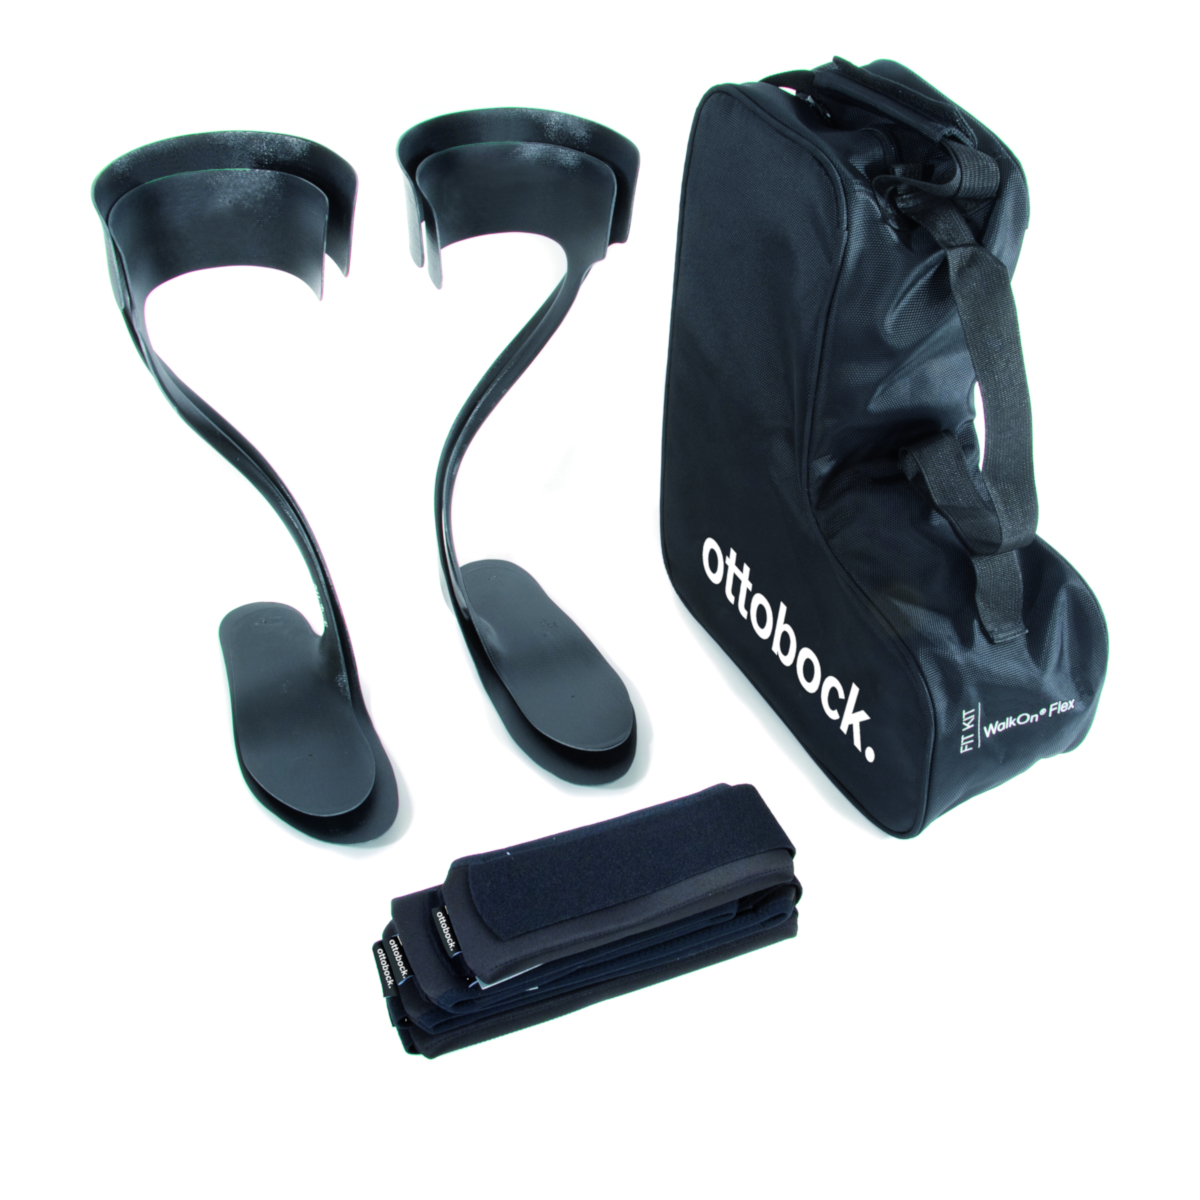 WalkOn Flex Fit Kit, WalkOn Fit Kits, Carbon Fiber AFO, AFO - Ankle Foot  Orthosis, Custom Orthotics, Orthotics